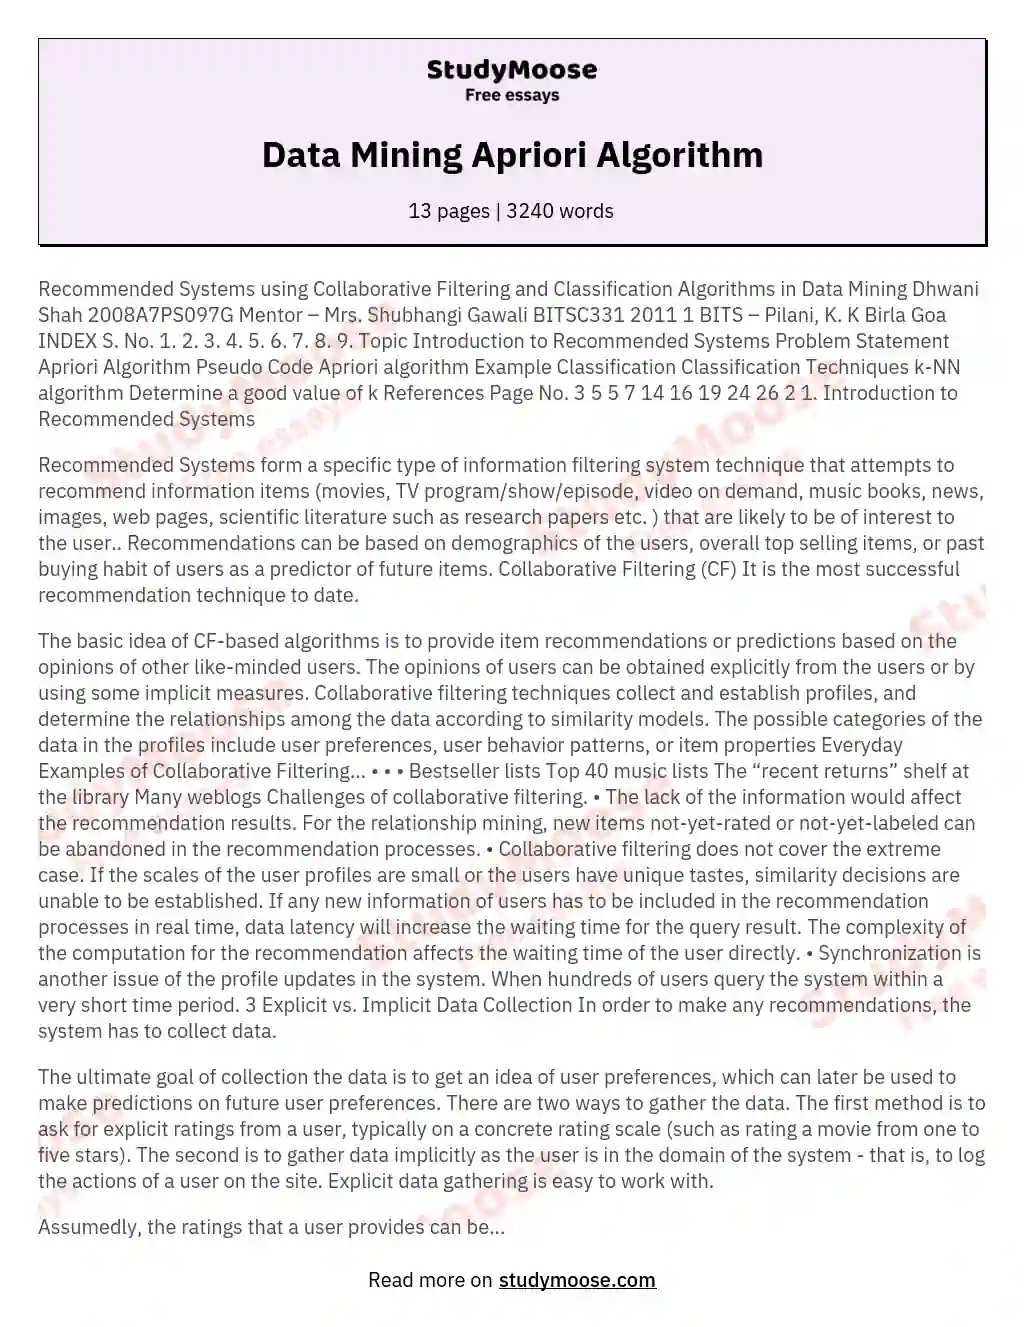 Data Mining Apriori Algorithm essay